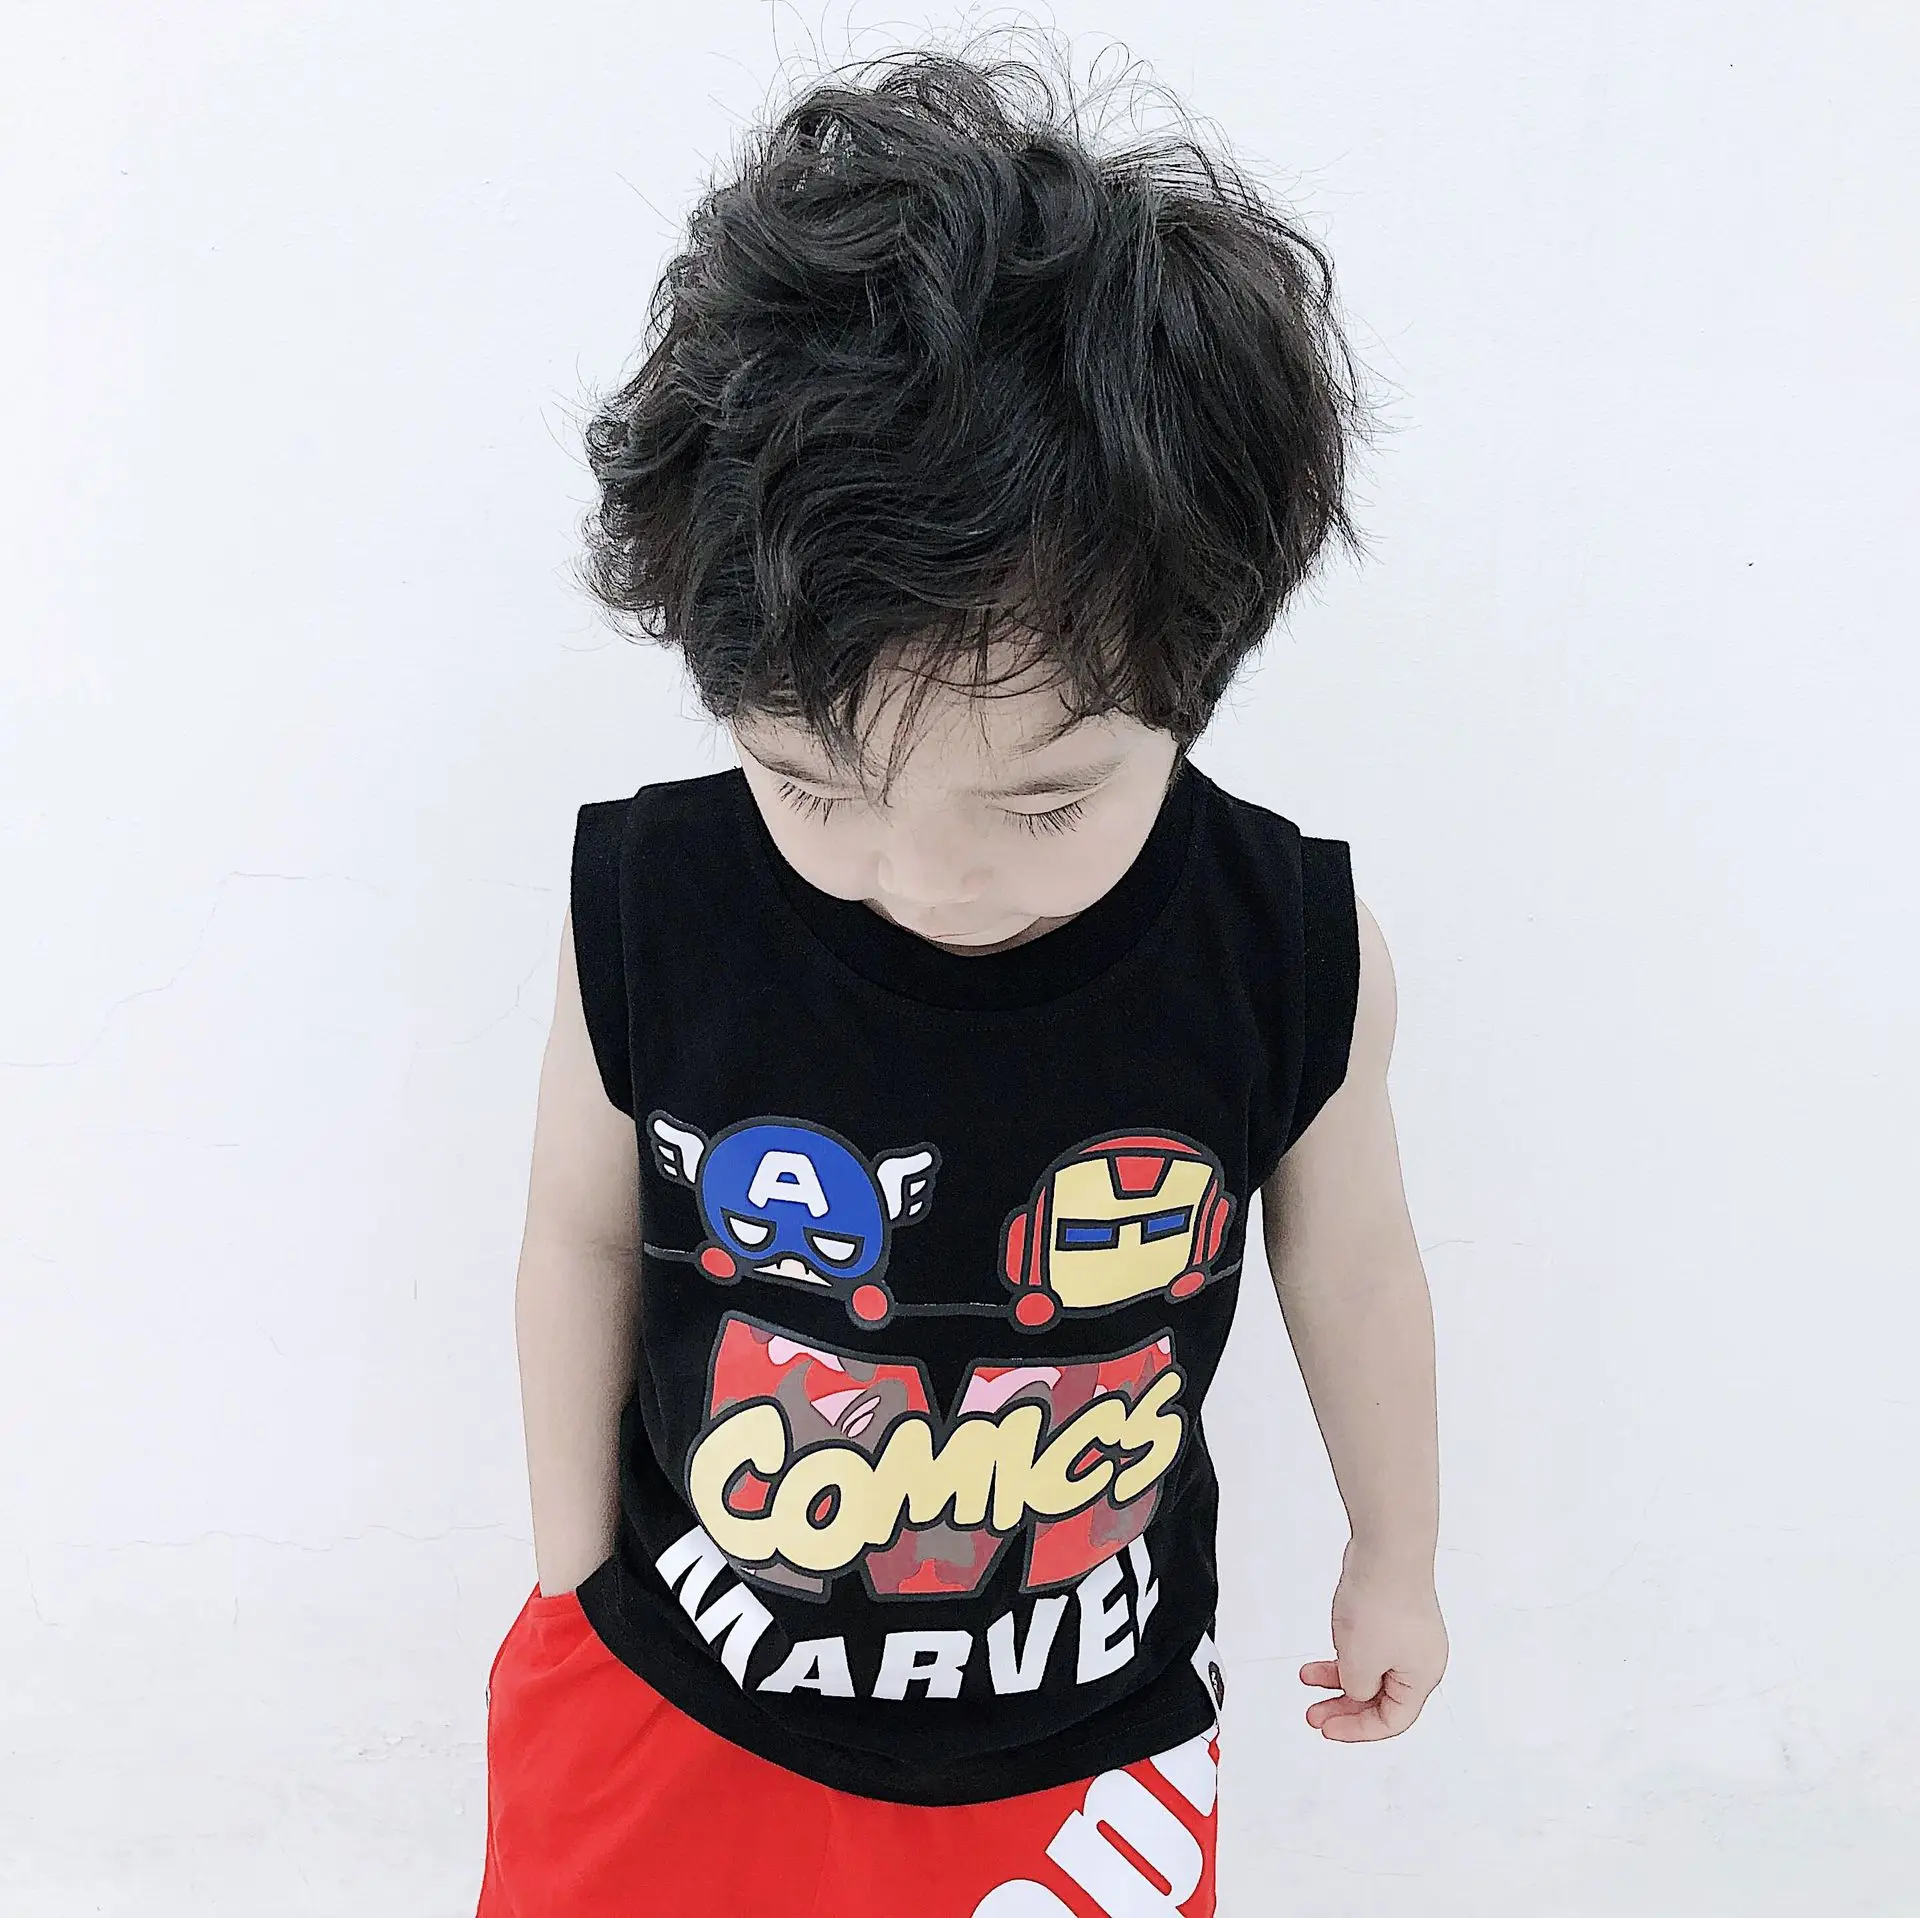 Г. Летний стиль, популярный бренд в японском стиле, Детская жилетка без рукавов с принтом «мстители», «Железный человек» вырез лодочкой